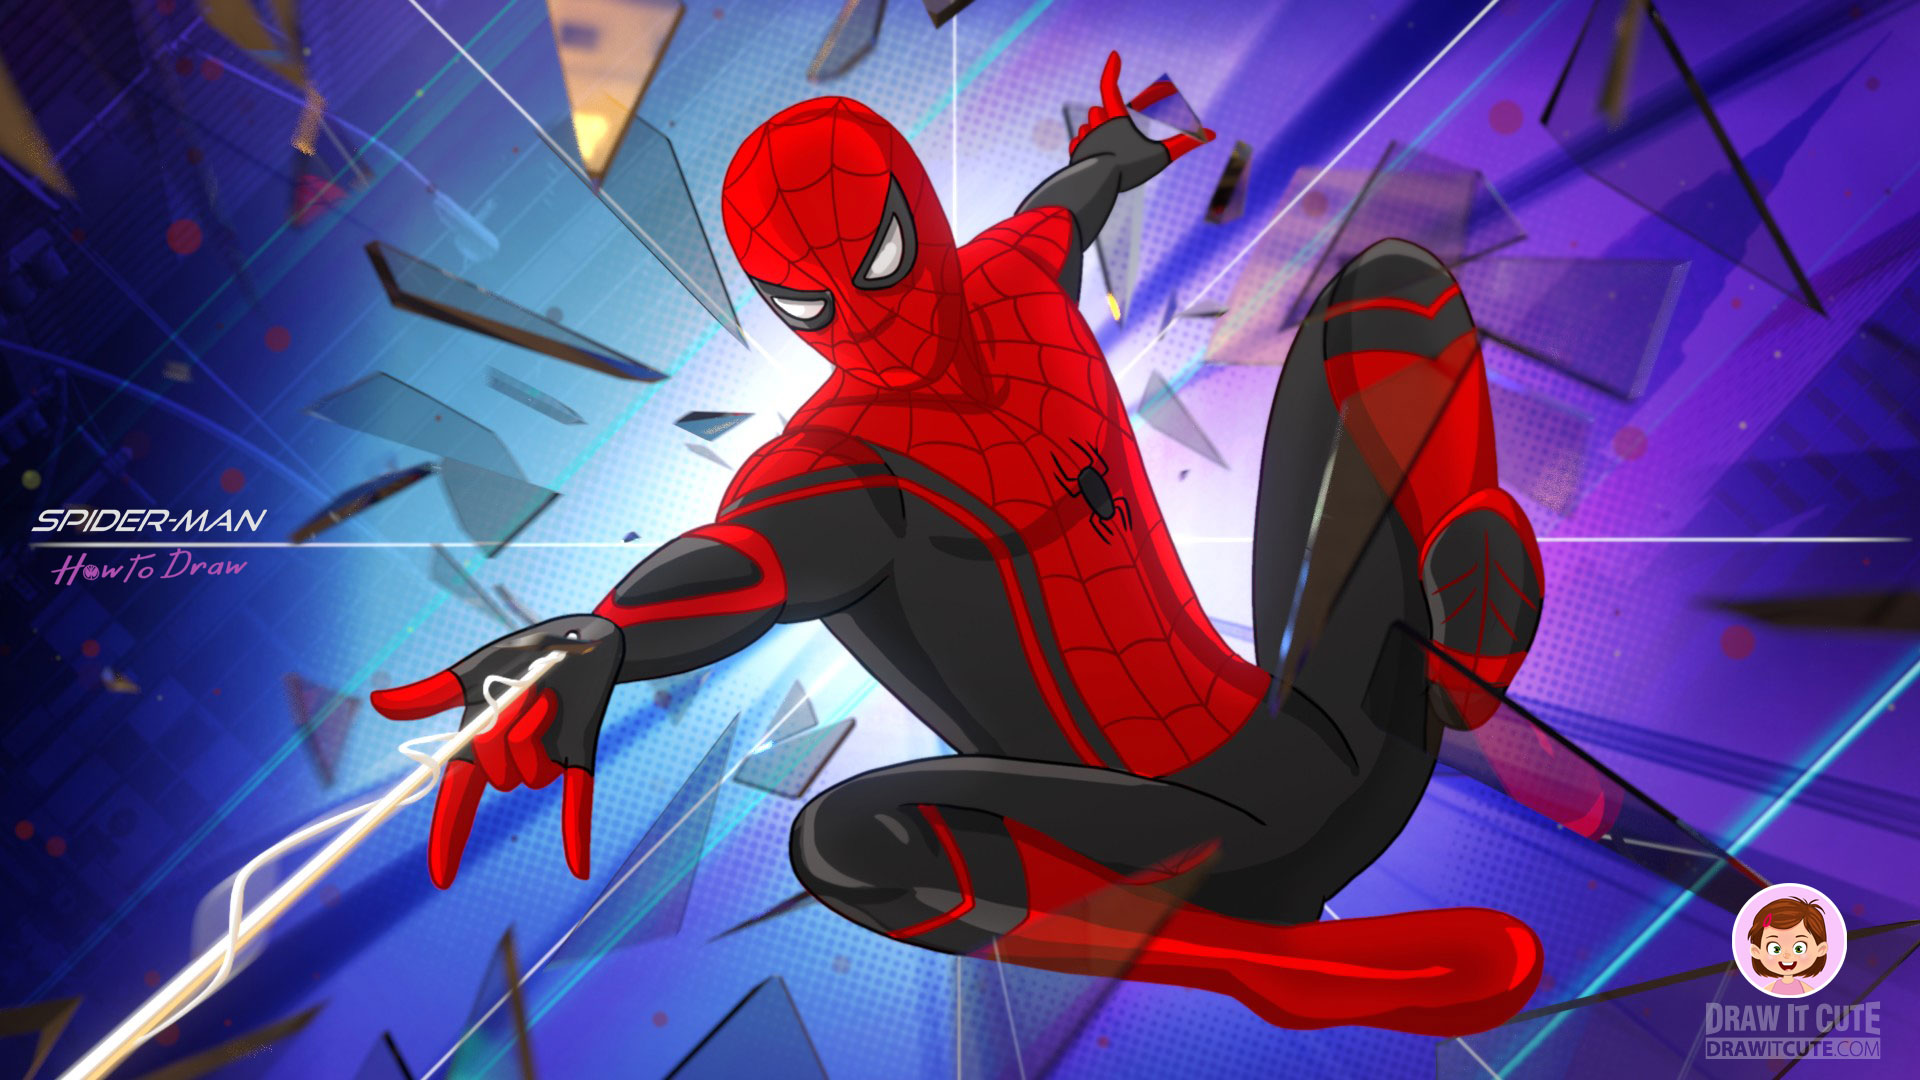 spiderman live wallpaper,hombre araña,personaje de ficción,dibujos animados,superhéroe,diseño gráfico